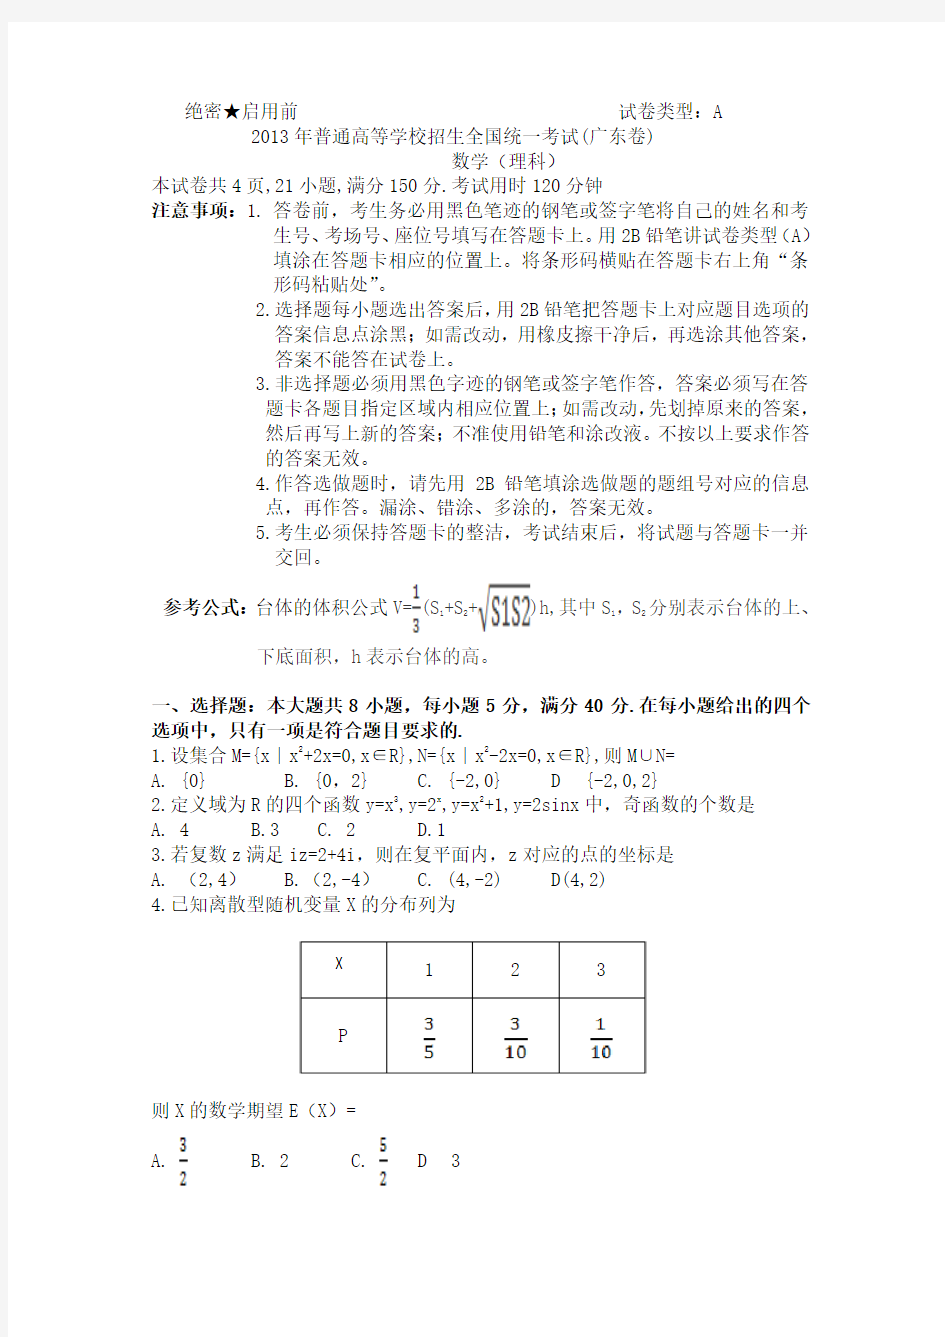 2013年高考真题——理科数学(广东卷)wor版